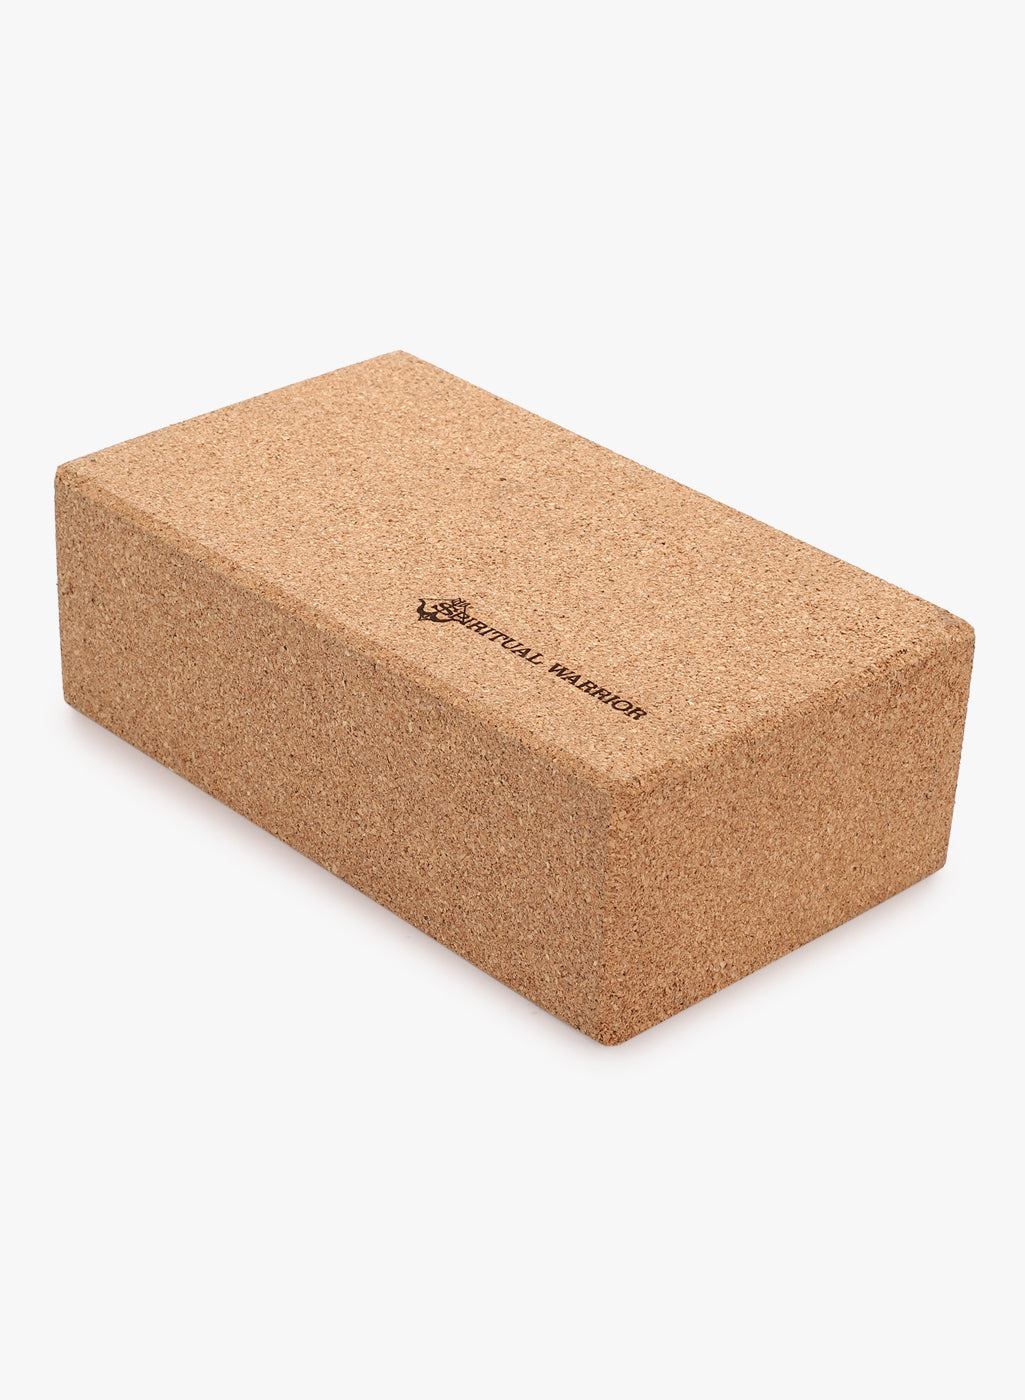 sustainable cork block